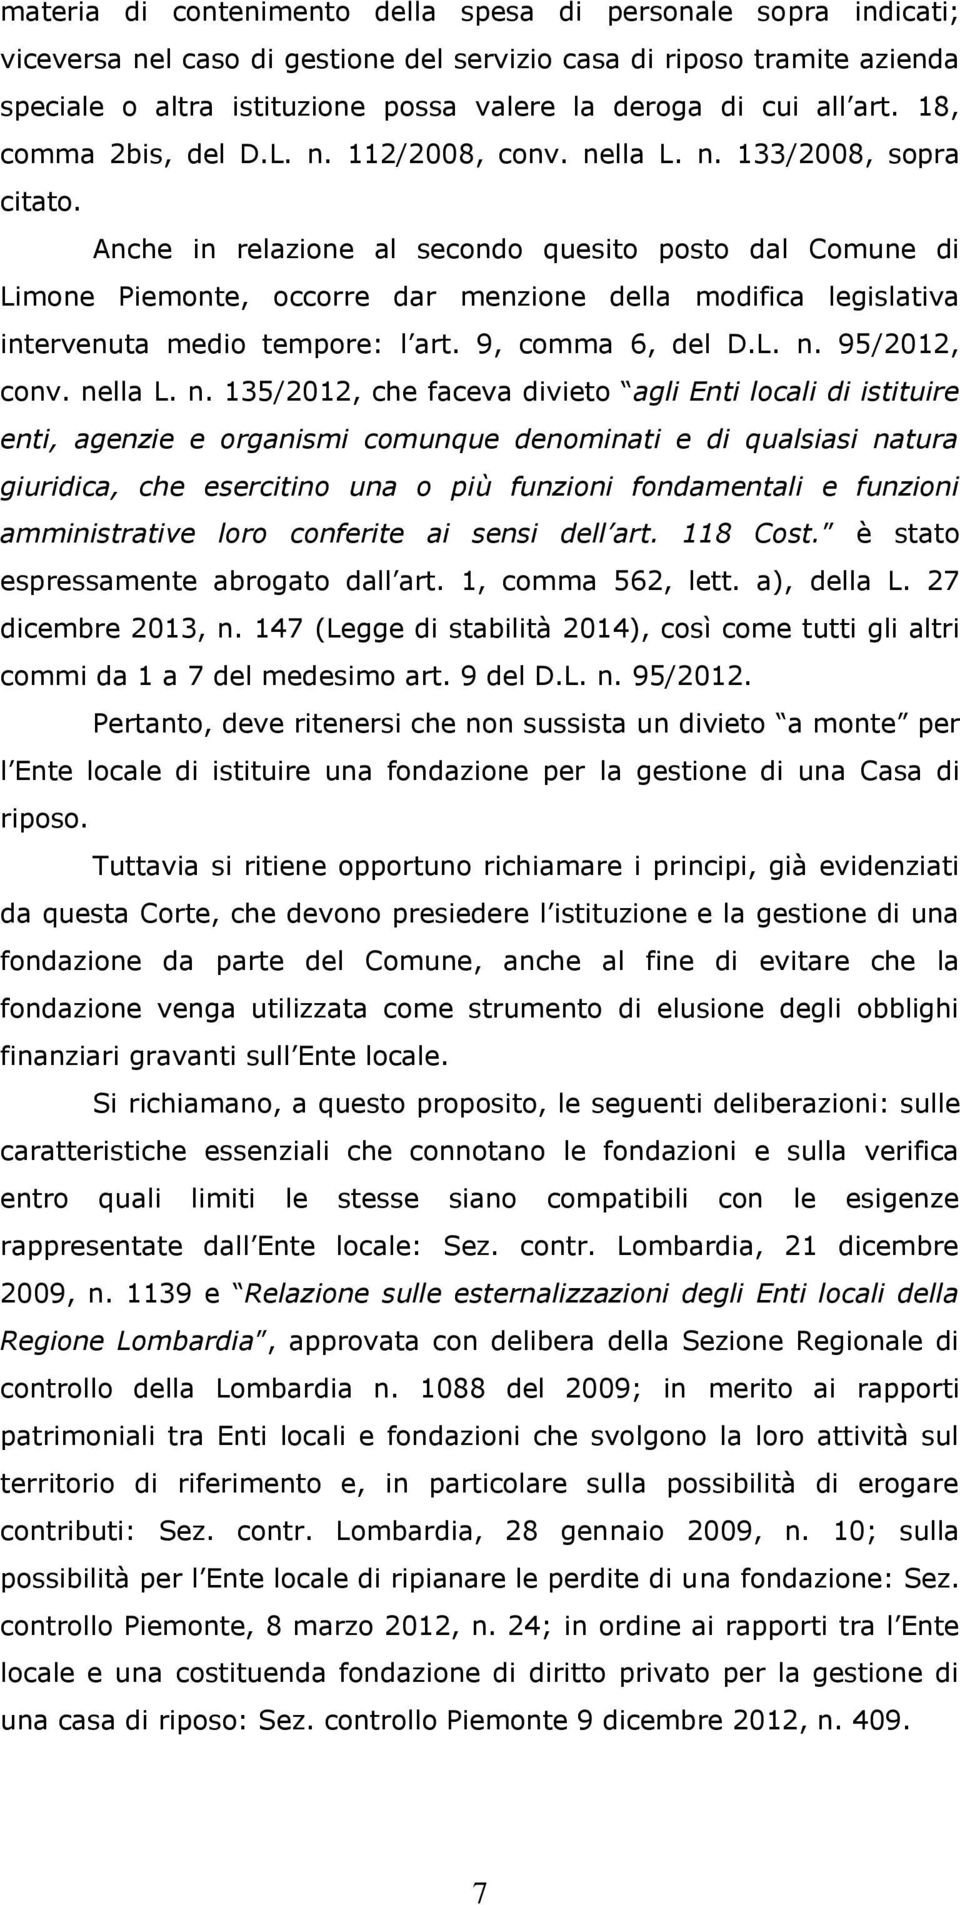 Anche in relazione al secondo quesito posto dal Comune di Limone Piemonte, occorre dar menzione della modifica legislativa intervenuta medio tempore: l art. 9, comma 6, del D.L. n. 95/2012, conv.